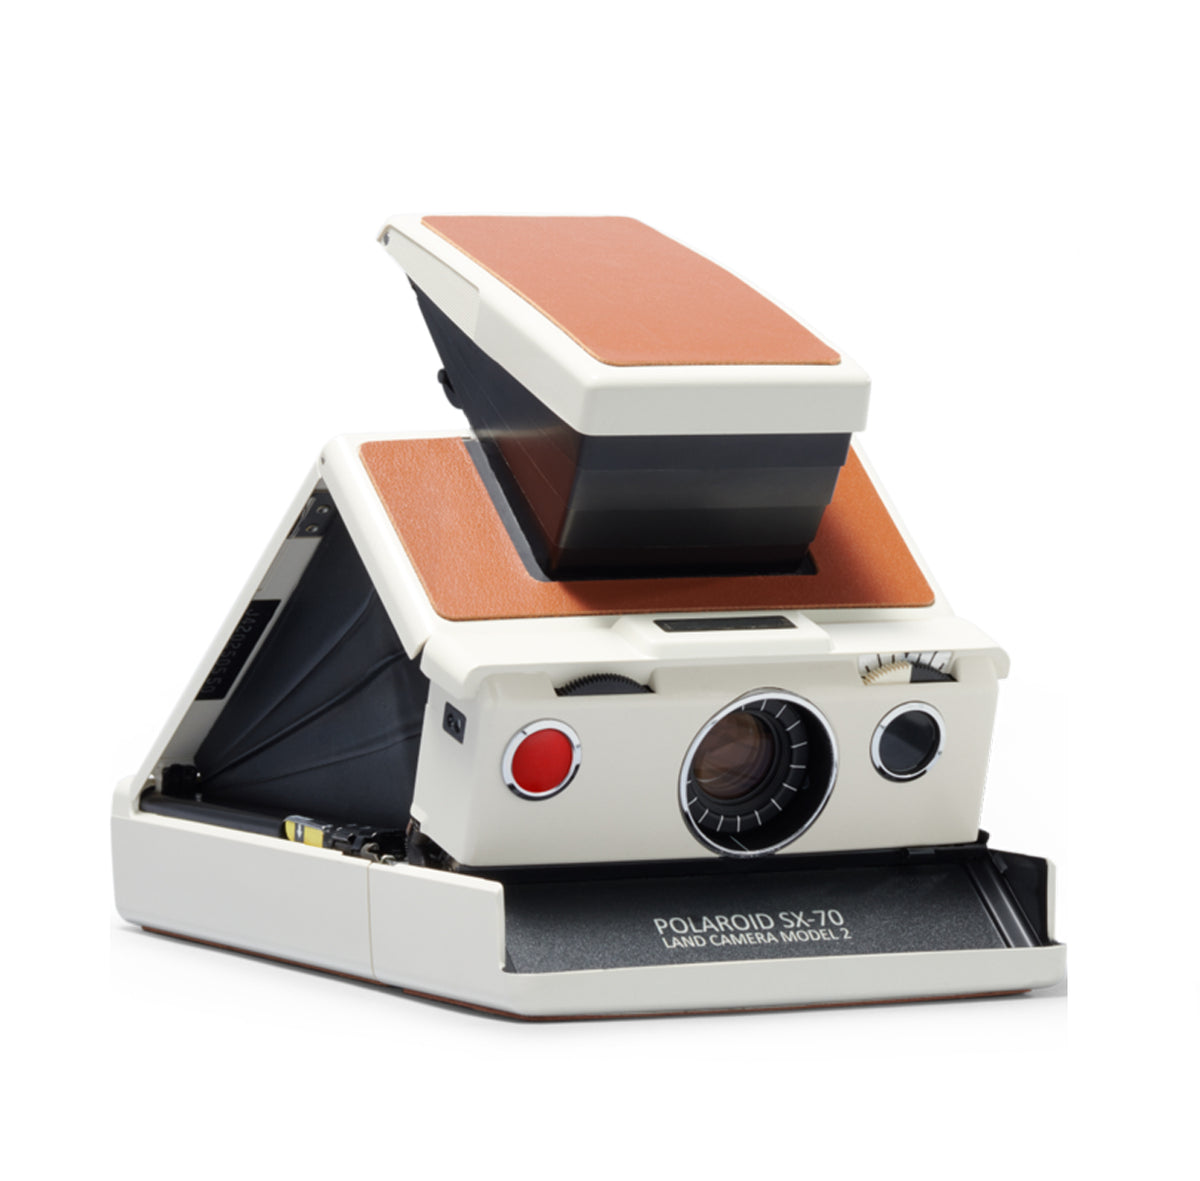 Una macchina fotografica Polaroid seduta sopra un tavolo di legno